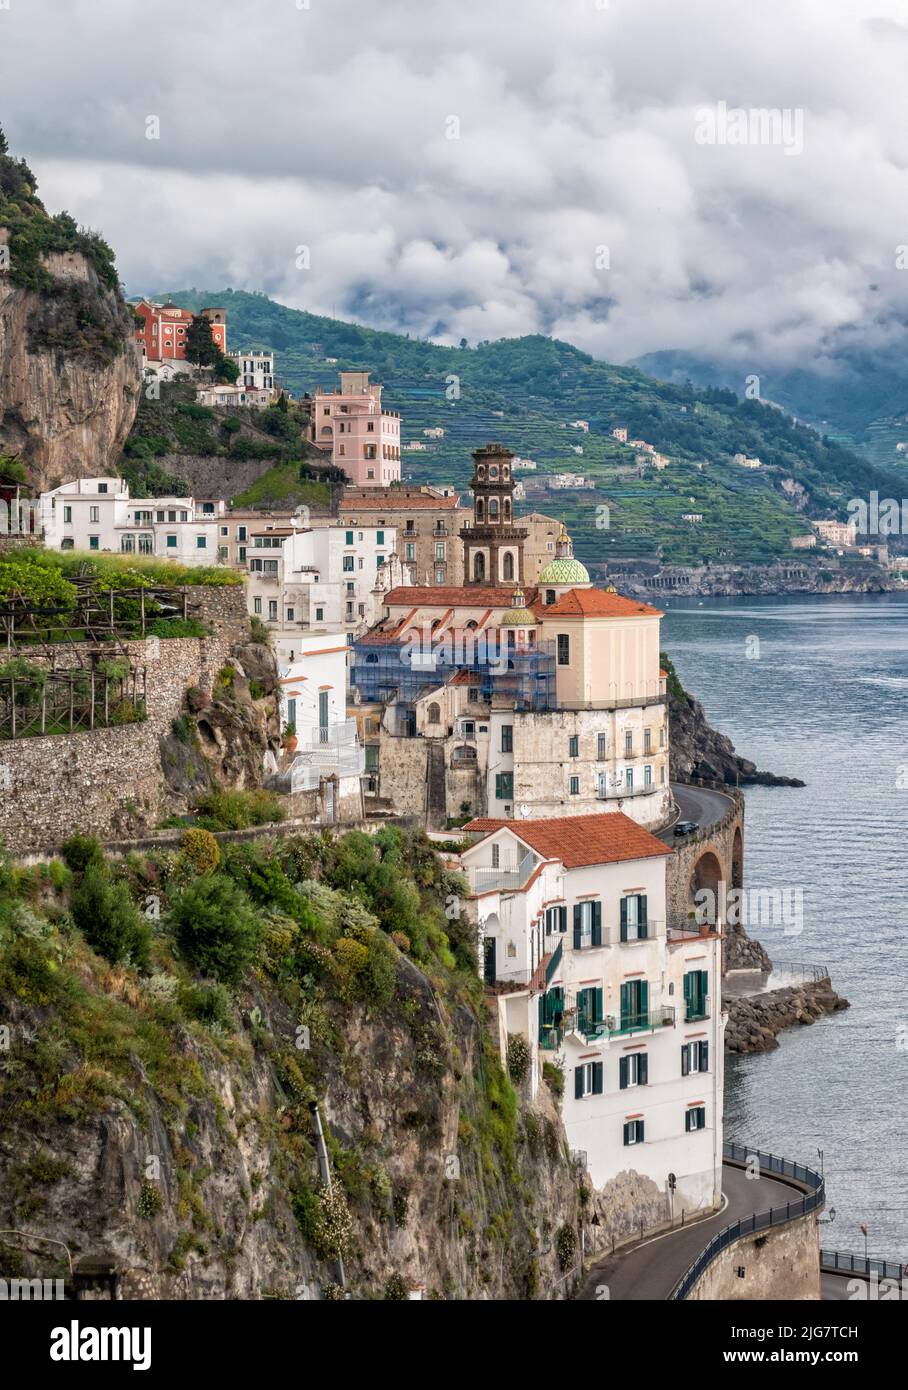 Kleine Stadt Atrani an der Amalfiküste in der Provinz Salerno, Region Kampanien, Italien. Die Amalfiküste ist ein beliebtes Reise- und Urlaubsziel Stockfoto